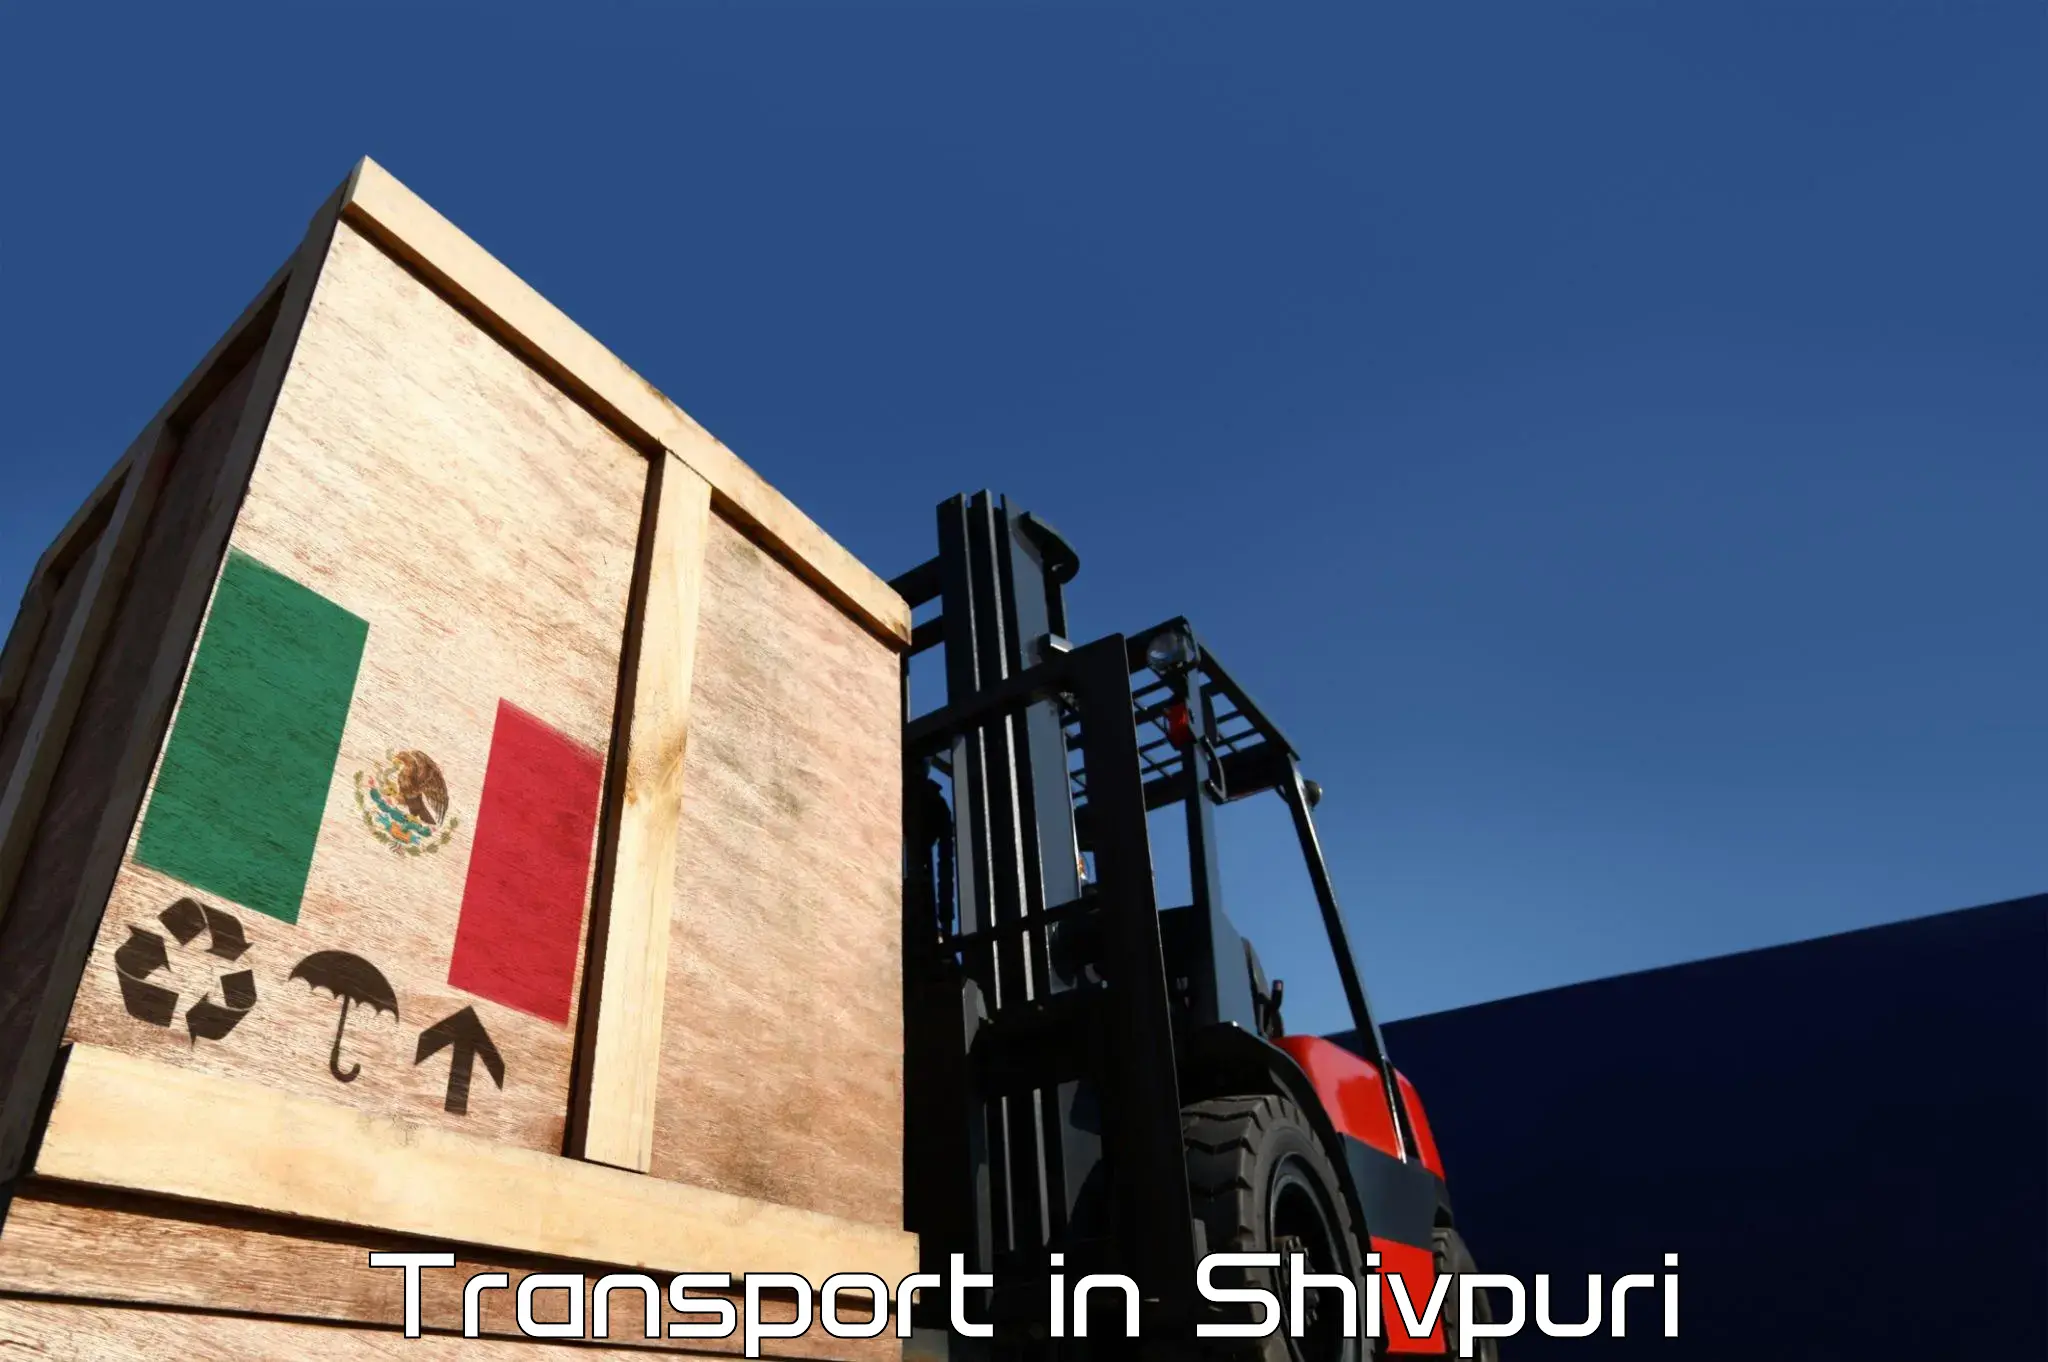 Nearest transport service in Shivpuri